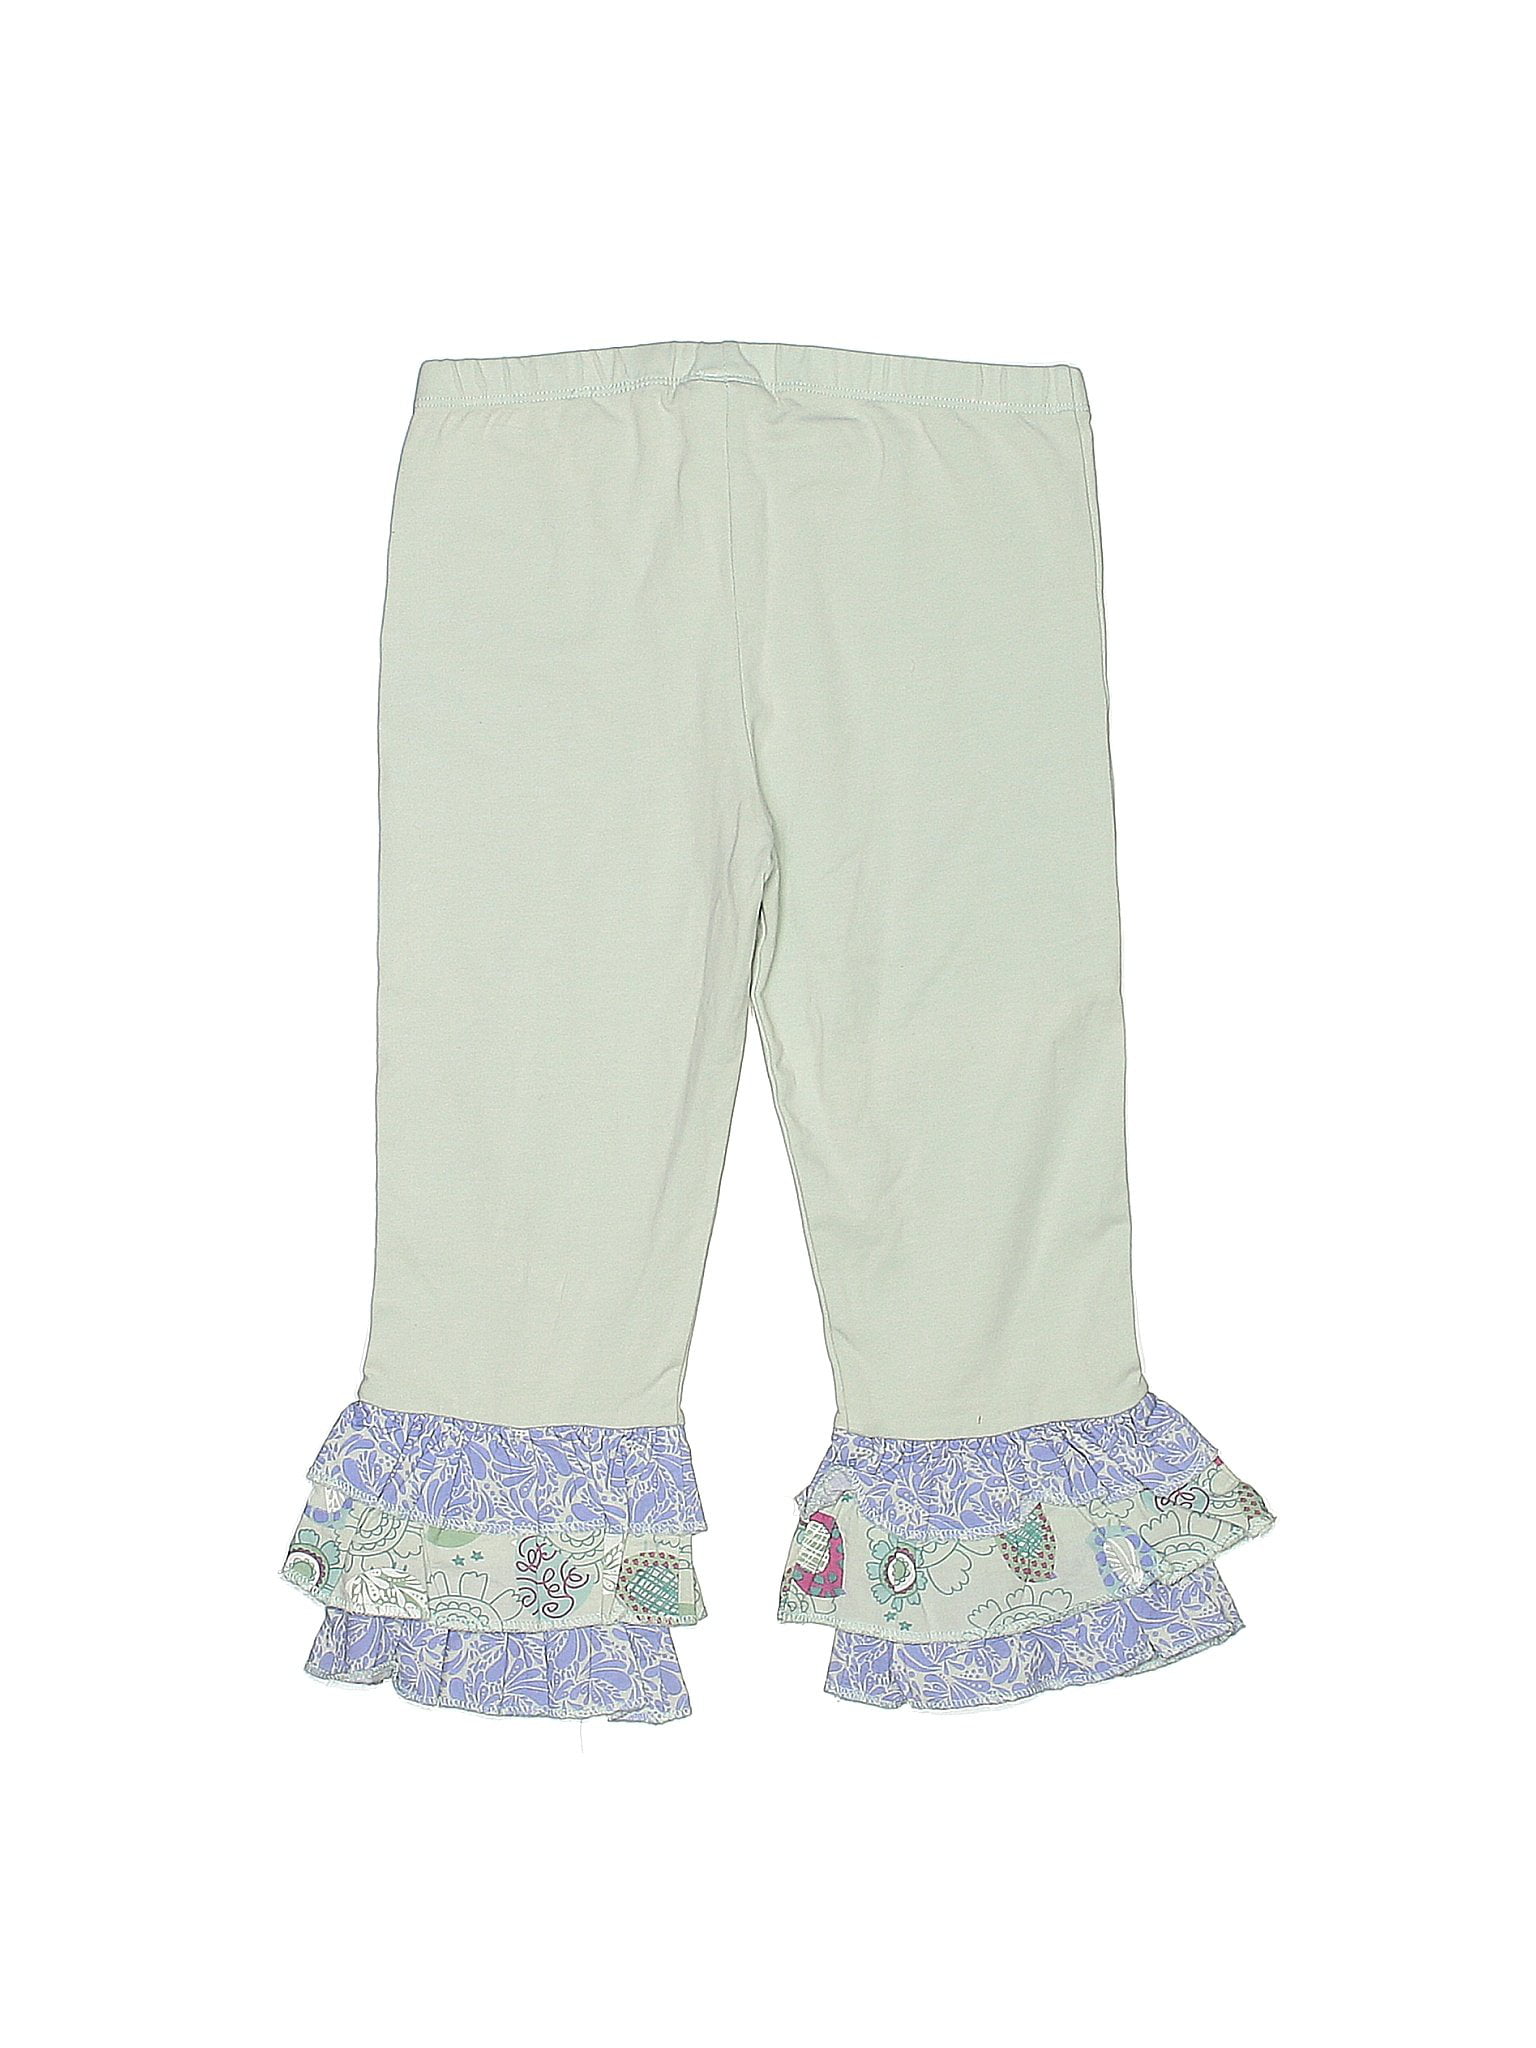 Pre-Owned Naartjie Kids Girl's Size 7 Casual Pants - Walmart.com